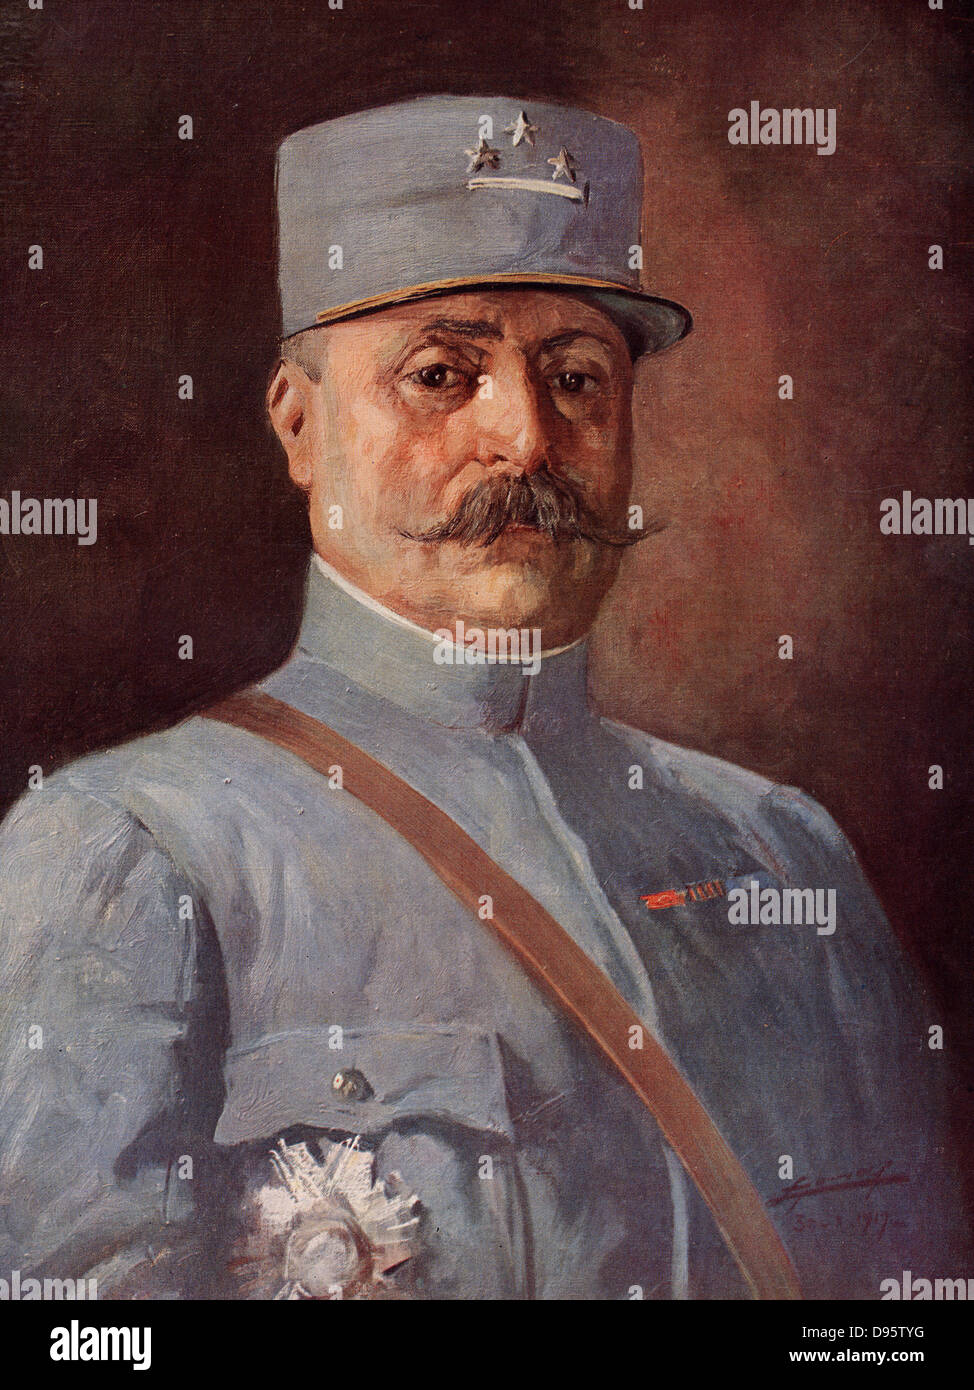 Général Adolphe Guillaumat (1863-1940). Le commandant de l'armée française dans la Première Guerre mondiale. À la fin de la guerre, il a été nommé au Conseil suprême de la guerre à Versailles. Banque D'Images